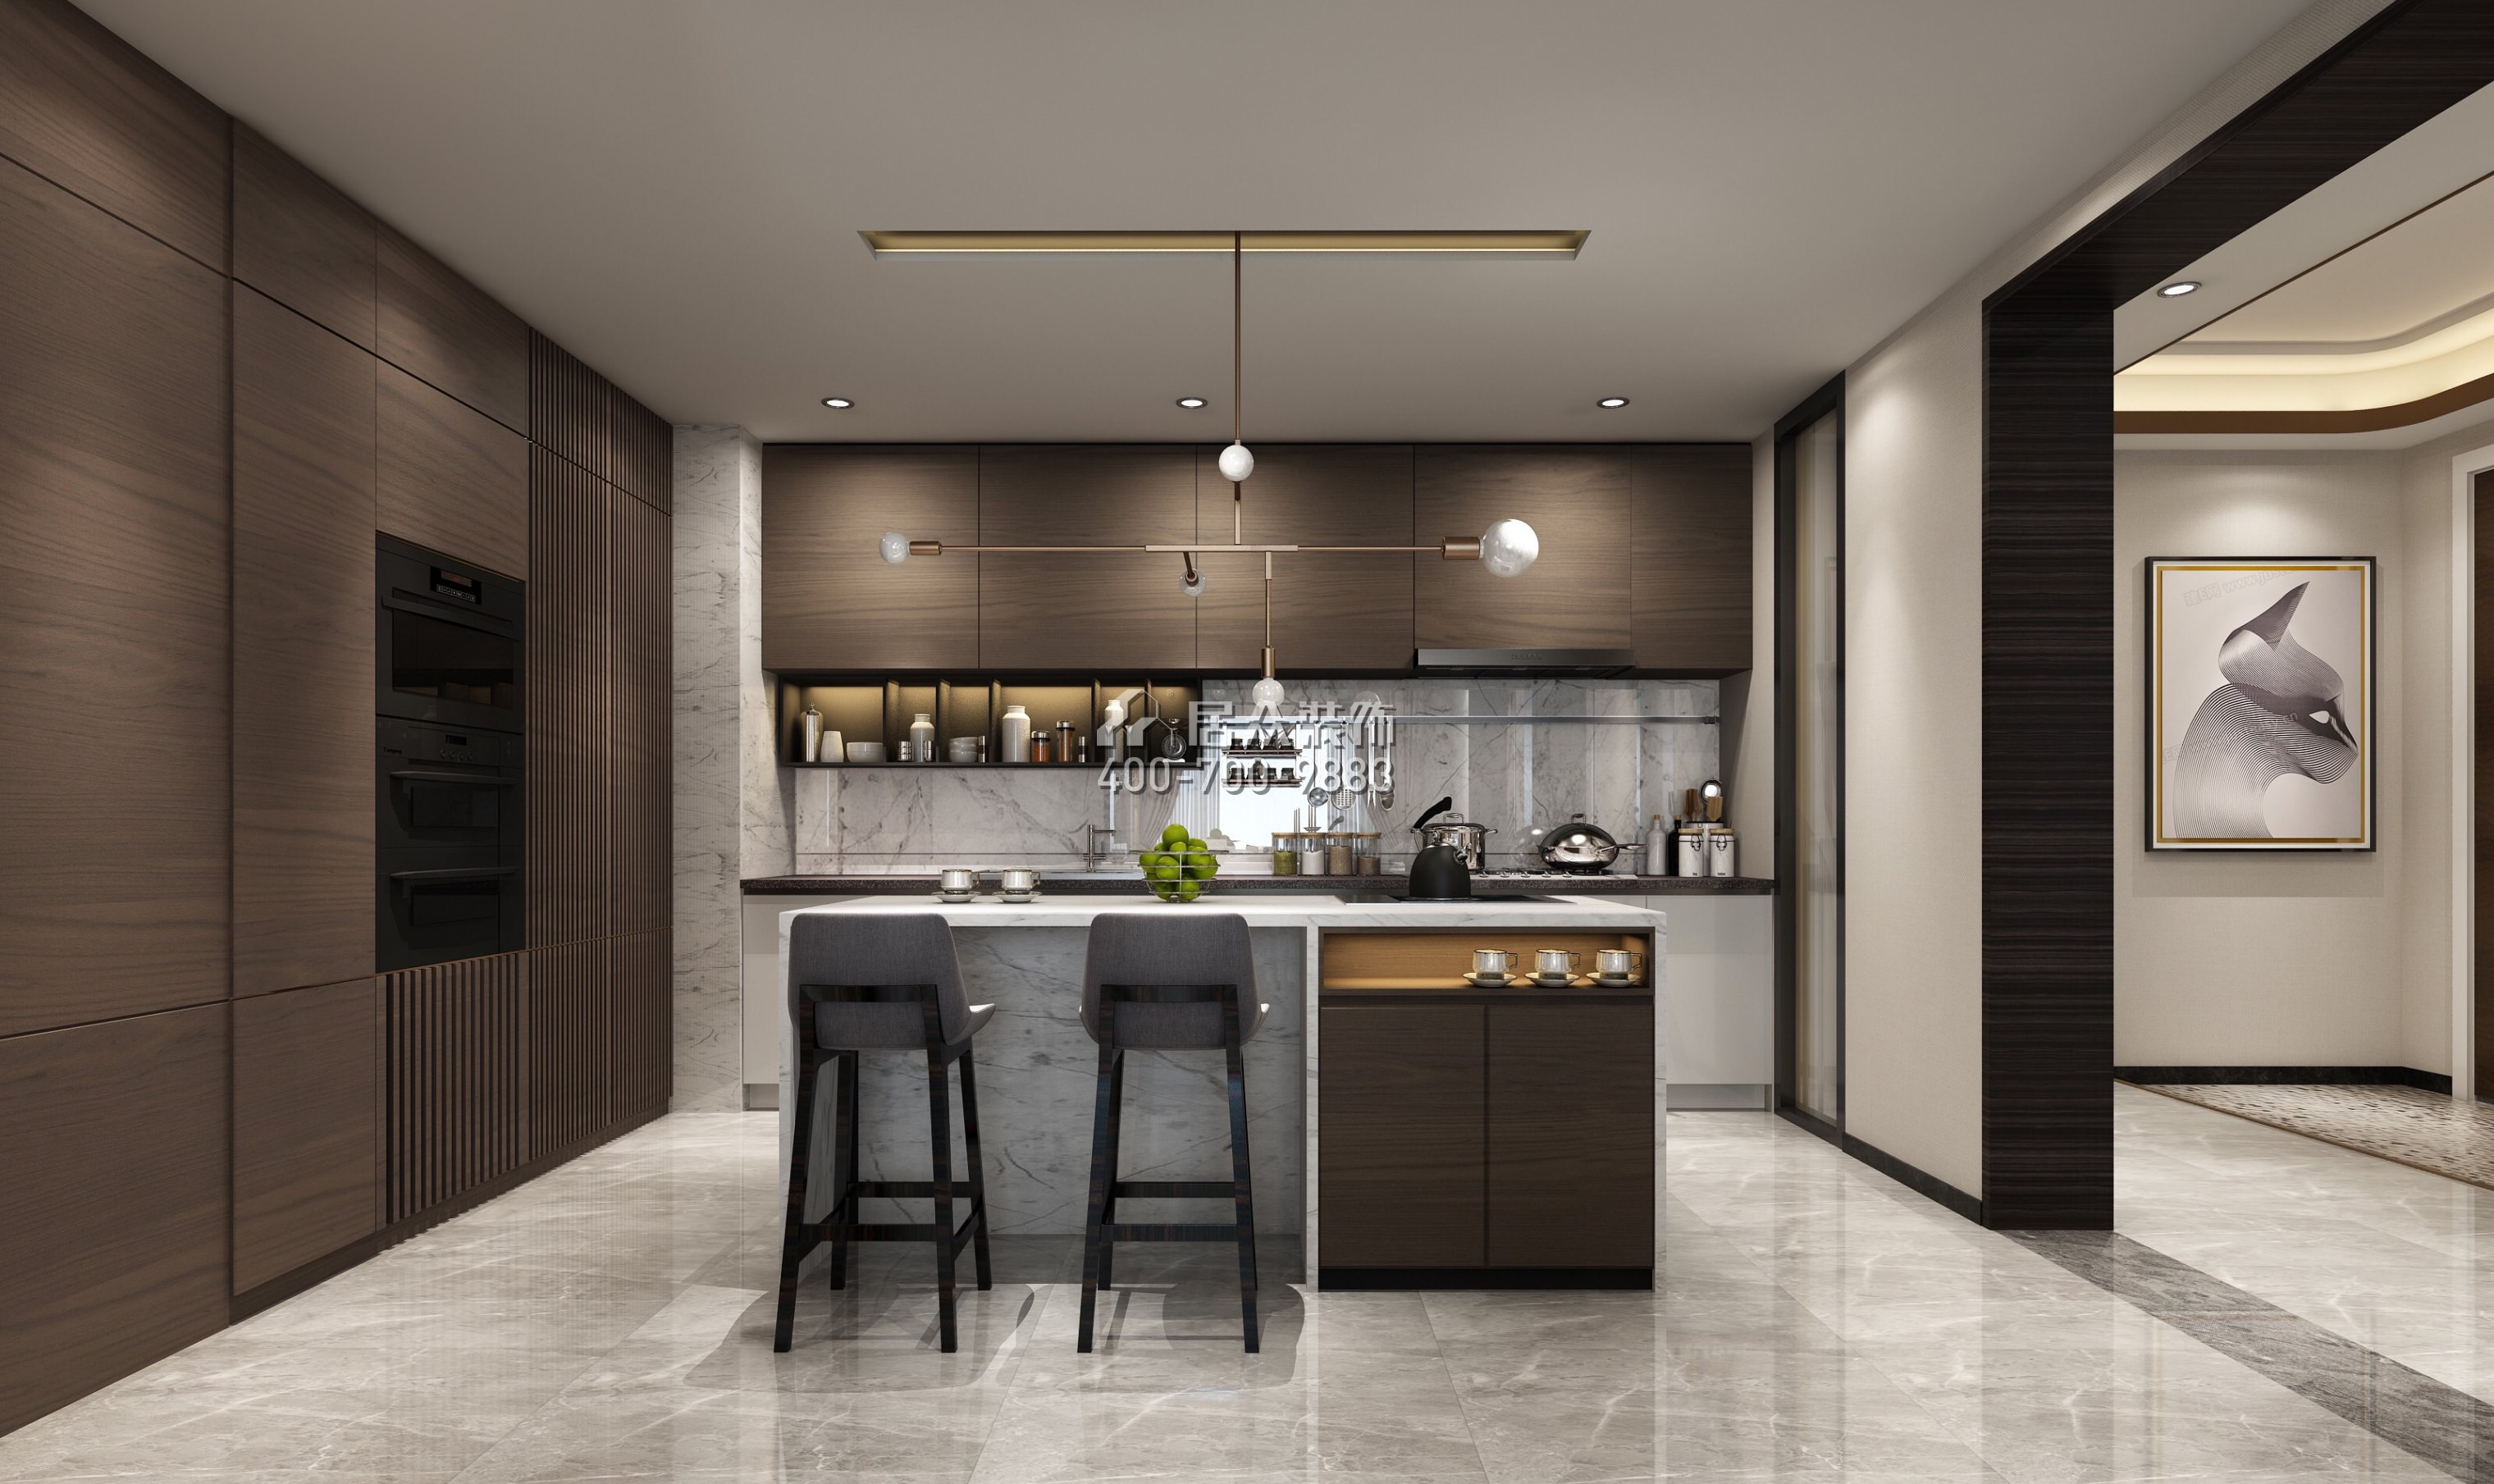 安柏丽晶180平方米现代简约风格平层户型家庭吧台装修效果图